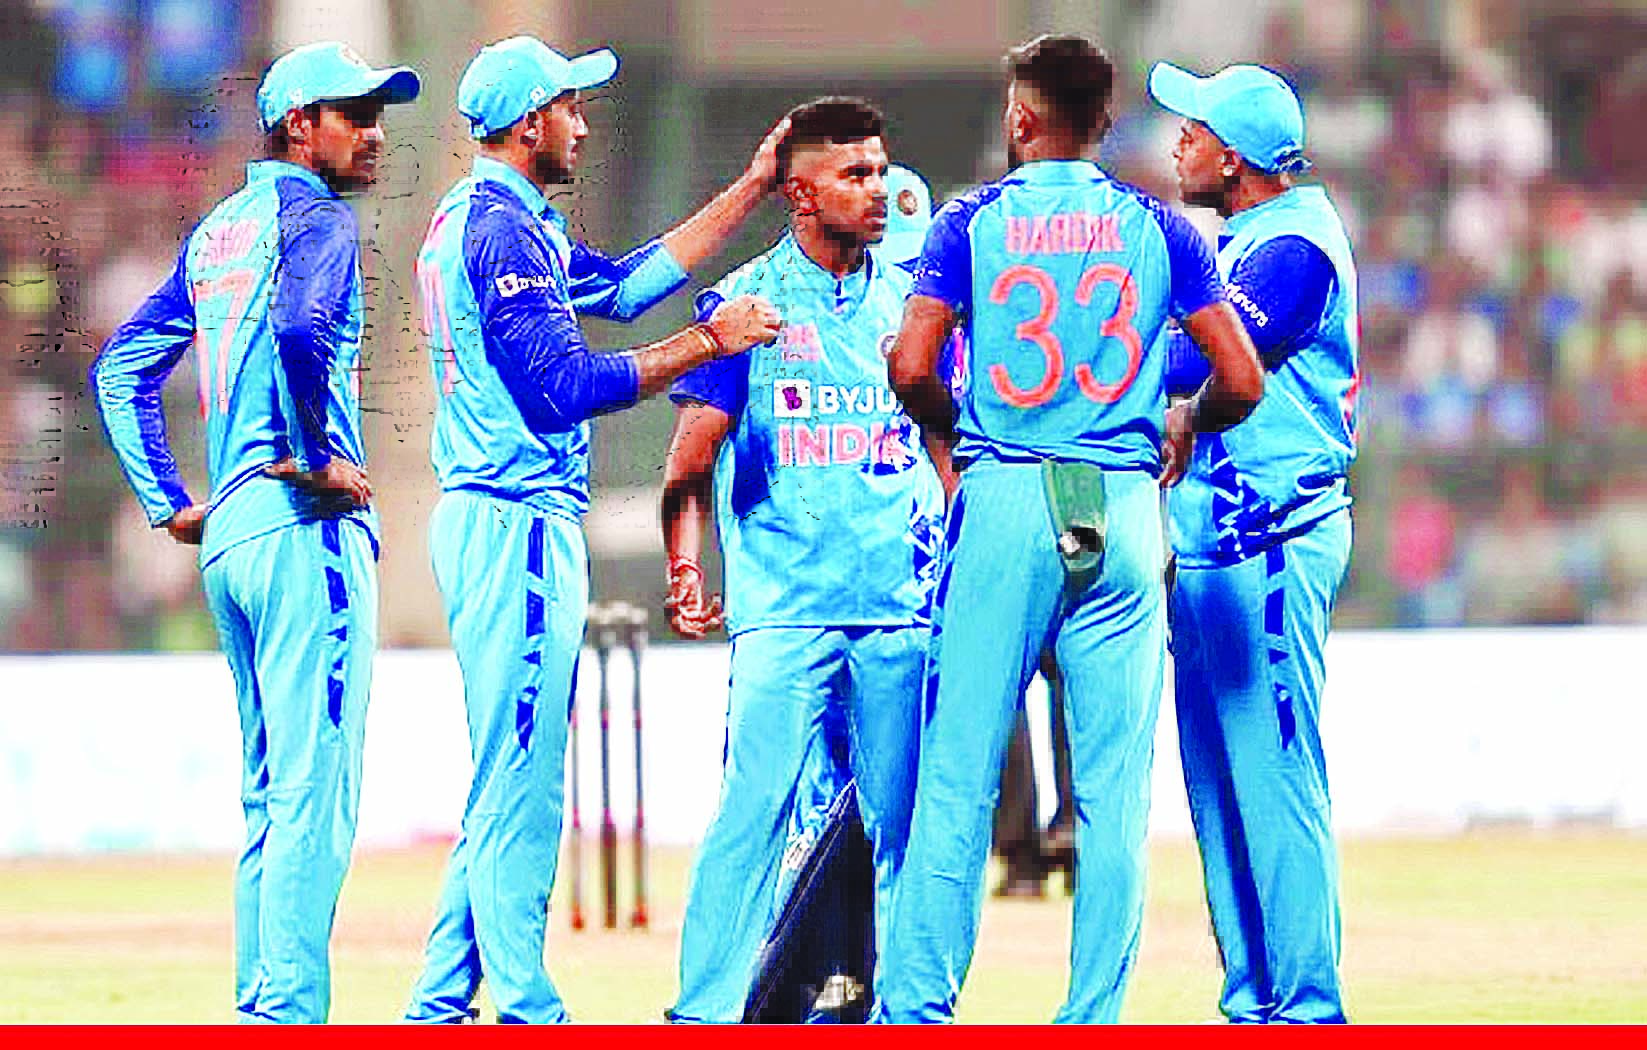 भारत ने श्रीलंका को दो रन से हराया, डेब्यू मैच में शिवम मावी ने चार विकेट लिए